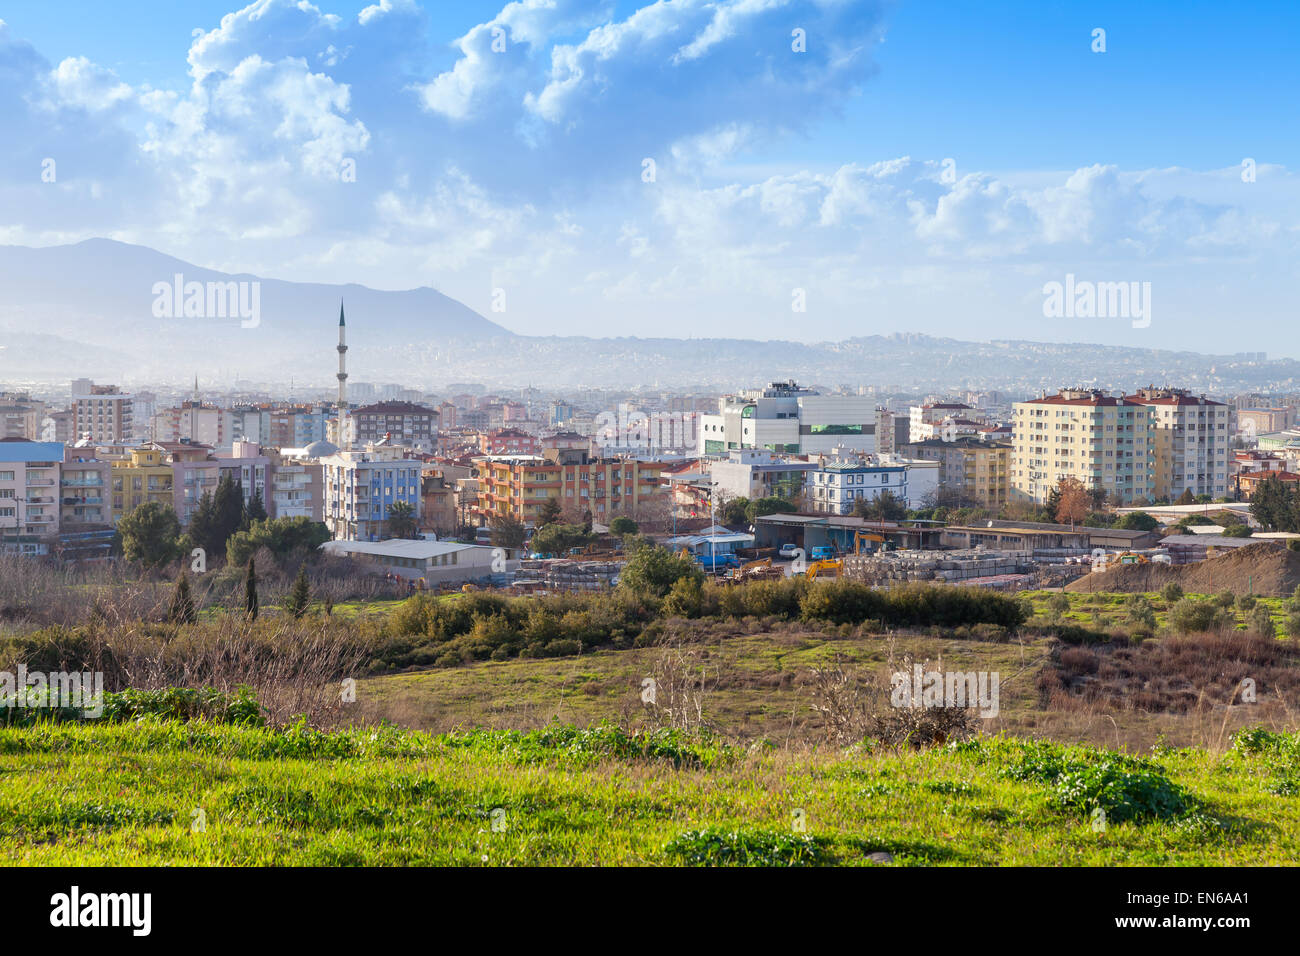 Stadtbild mit modernen Gebäuden unter blauen Wolkenhimmel. Stadt Izmir, Türkei Stockfoto